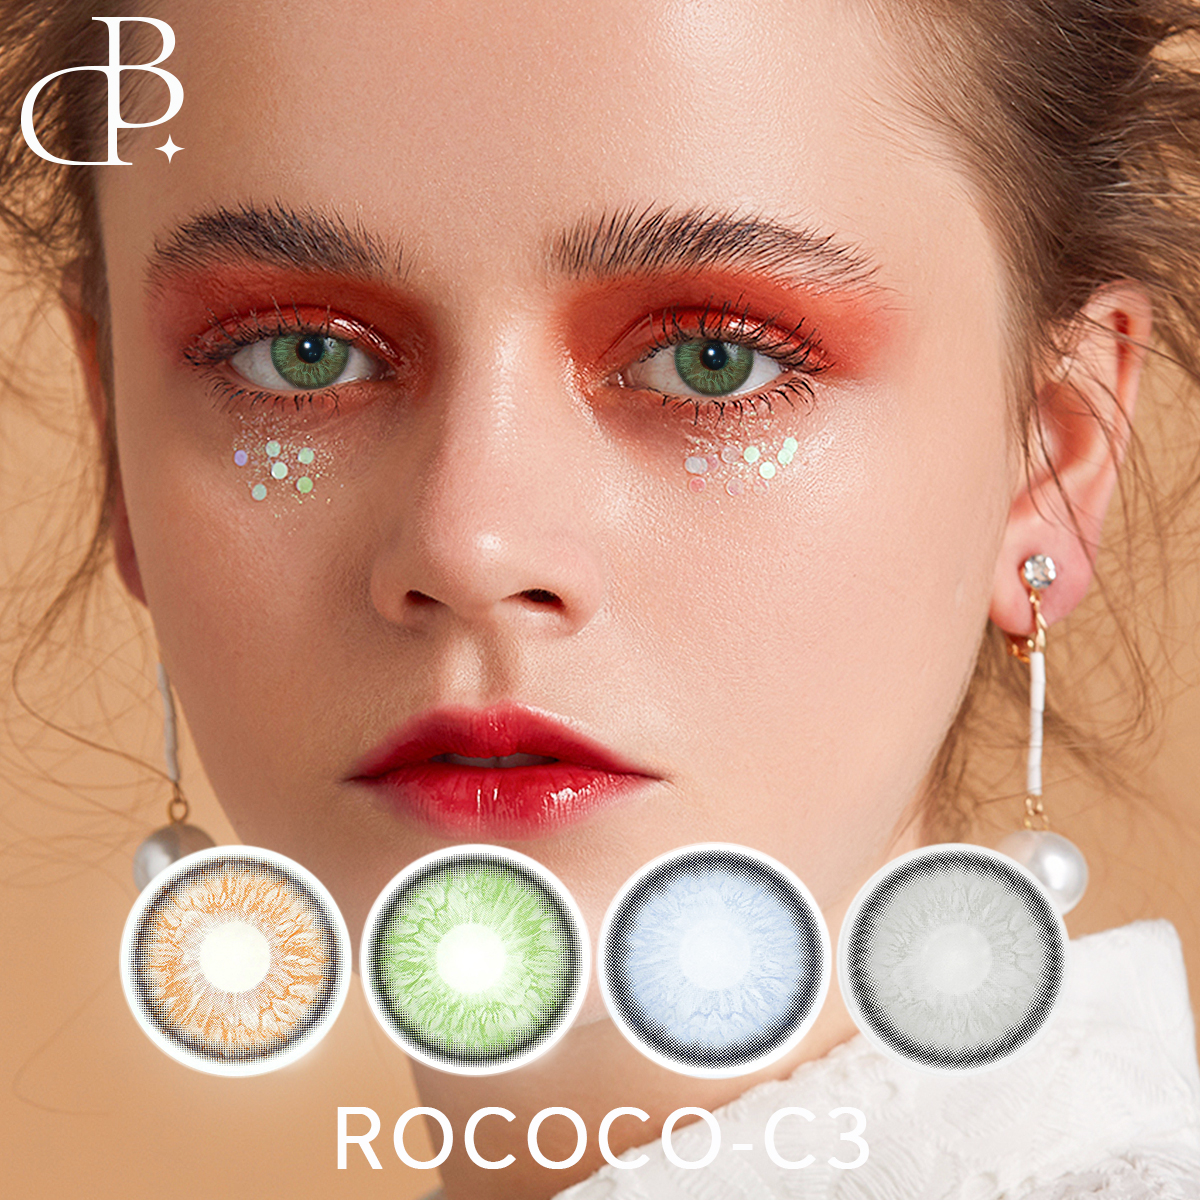 ROCOCO-3 سری 1 ساله لنز رنگی کارخانه ای درجه لنزهای تماسی رنگی آرایشی و بهداشتی با جعبه